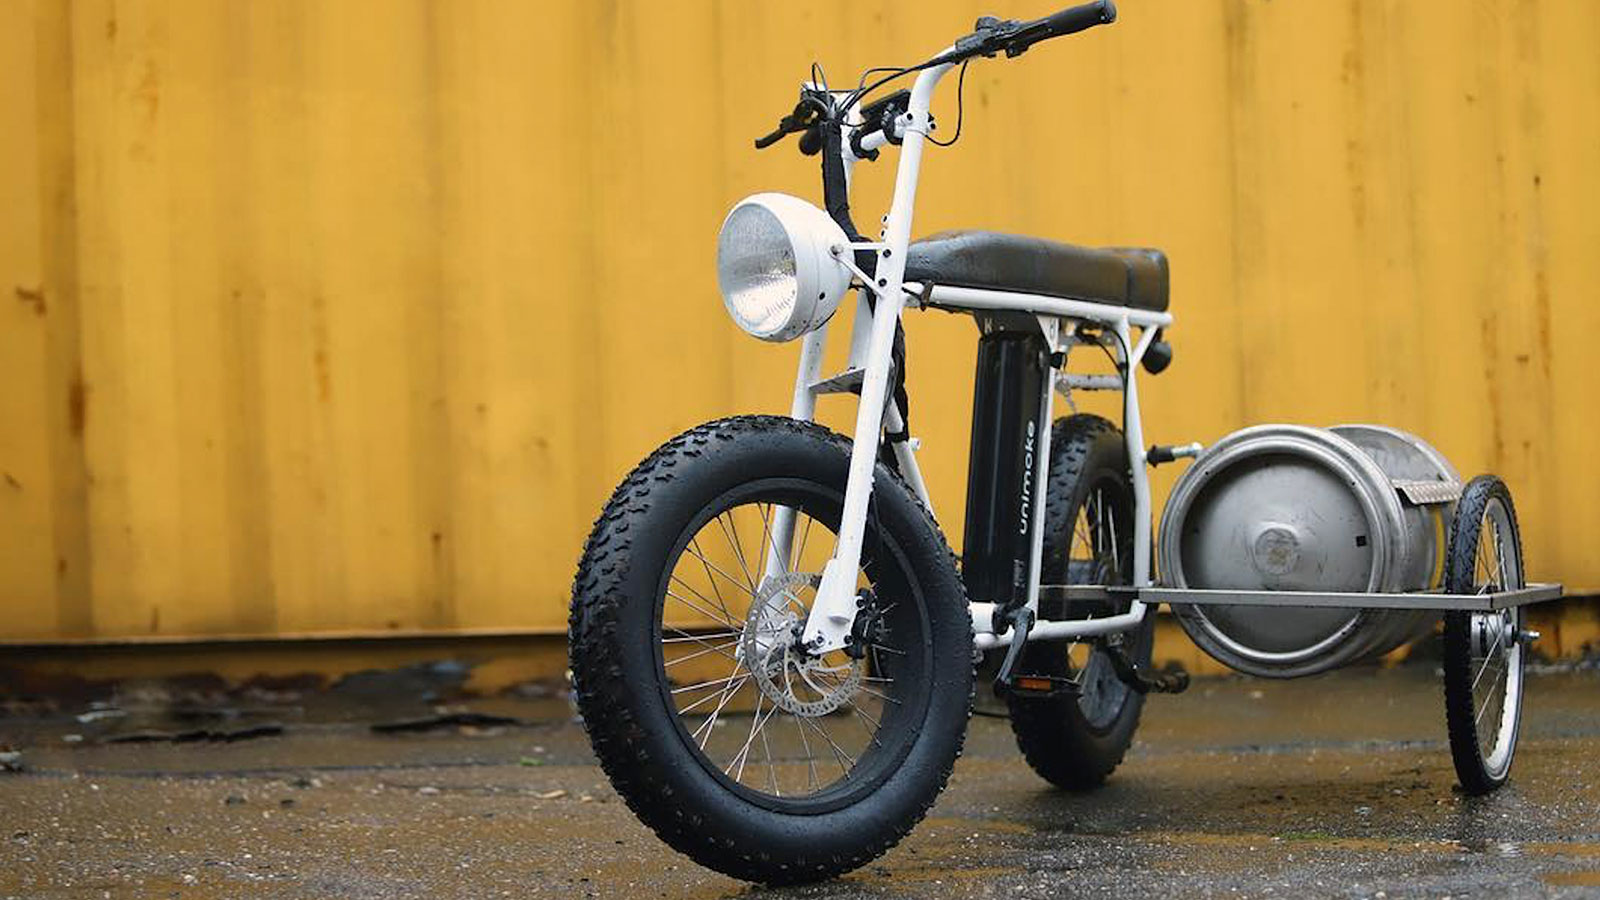 Beer Keg Bike Sidecar